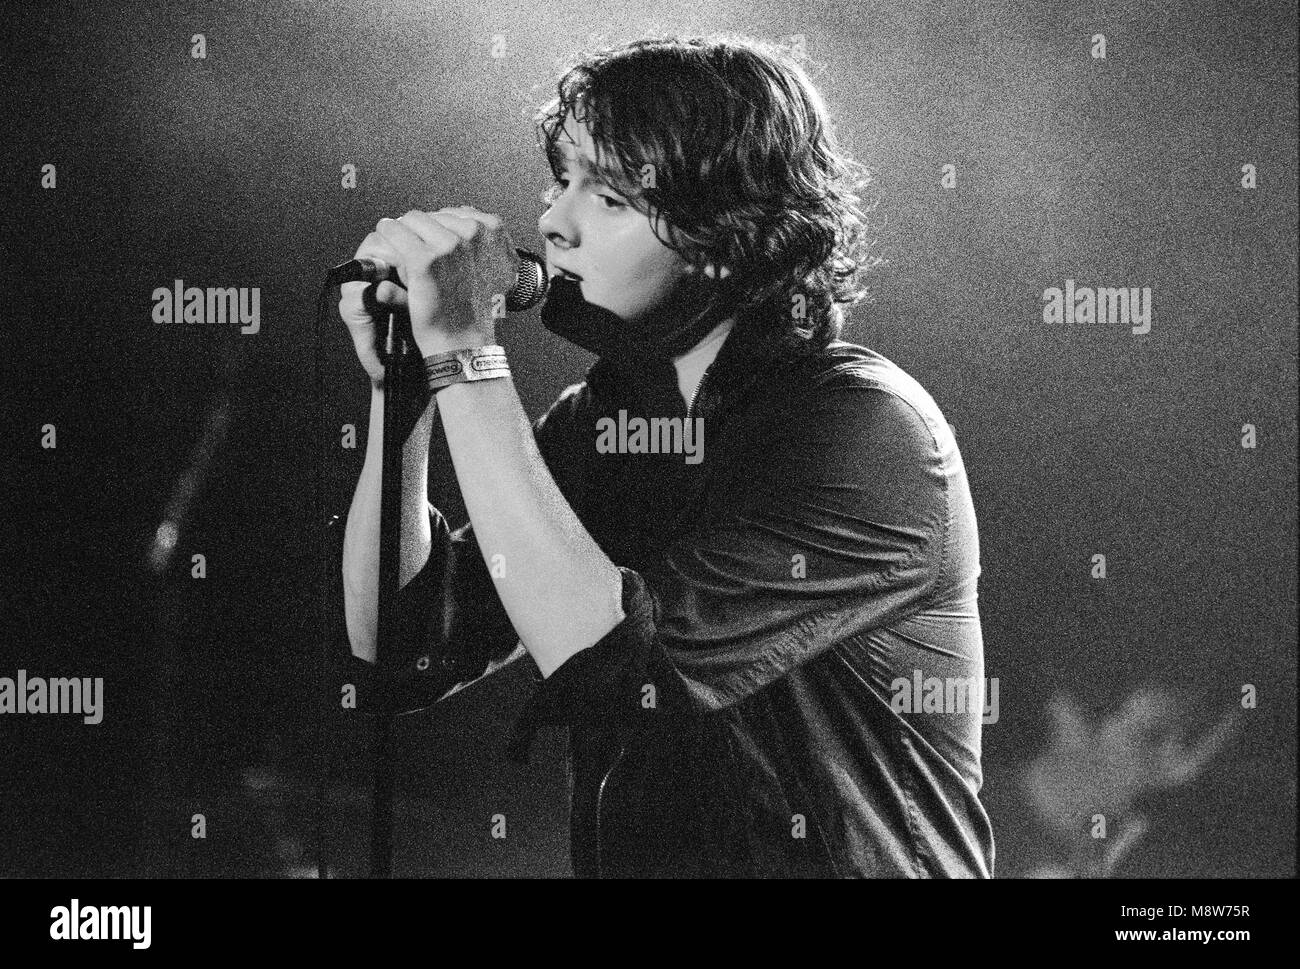 Tom Chaplin, chanteur du groupe anglais Keane se produisant au Melkweg Lijnbaansgracht, 8 juillet 2004, Amsterdam, Pays-Bas Banque D'Images